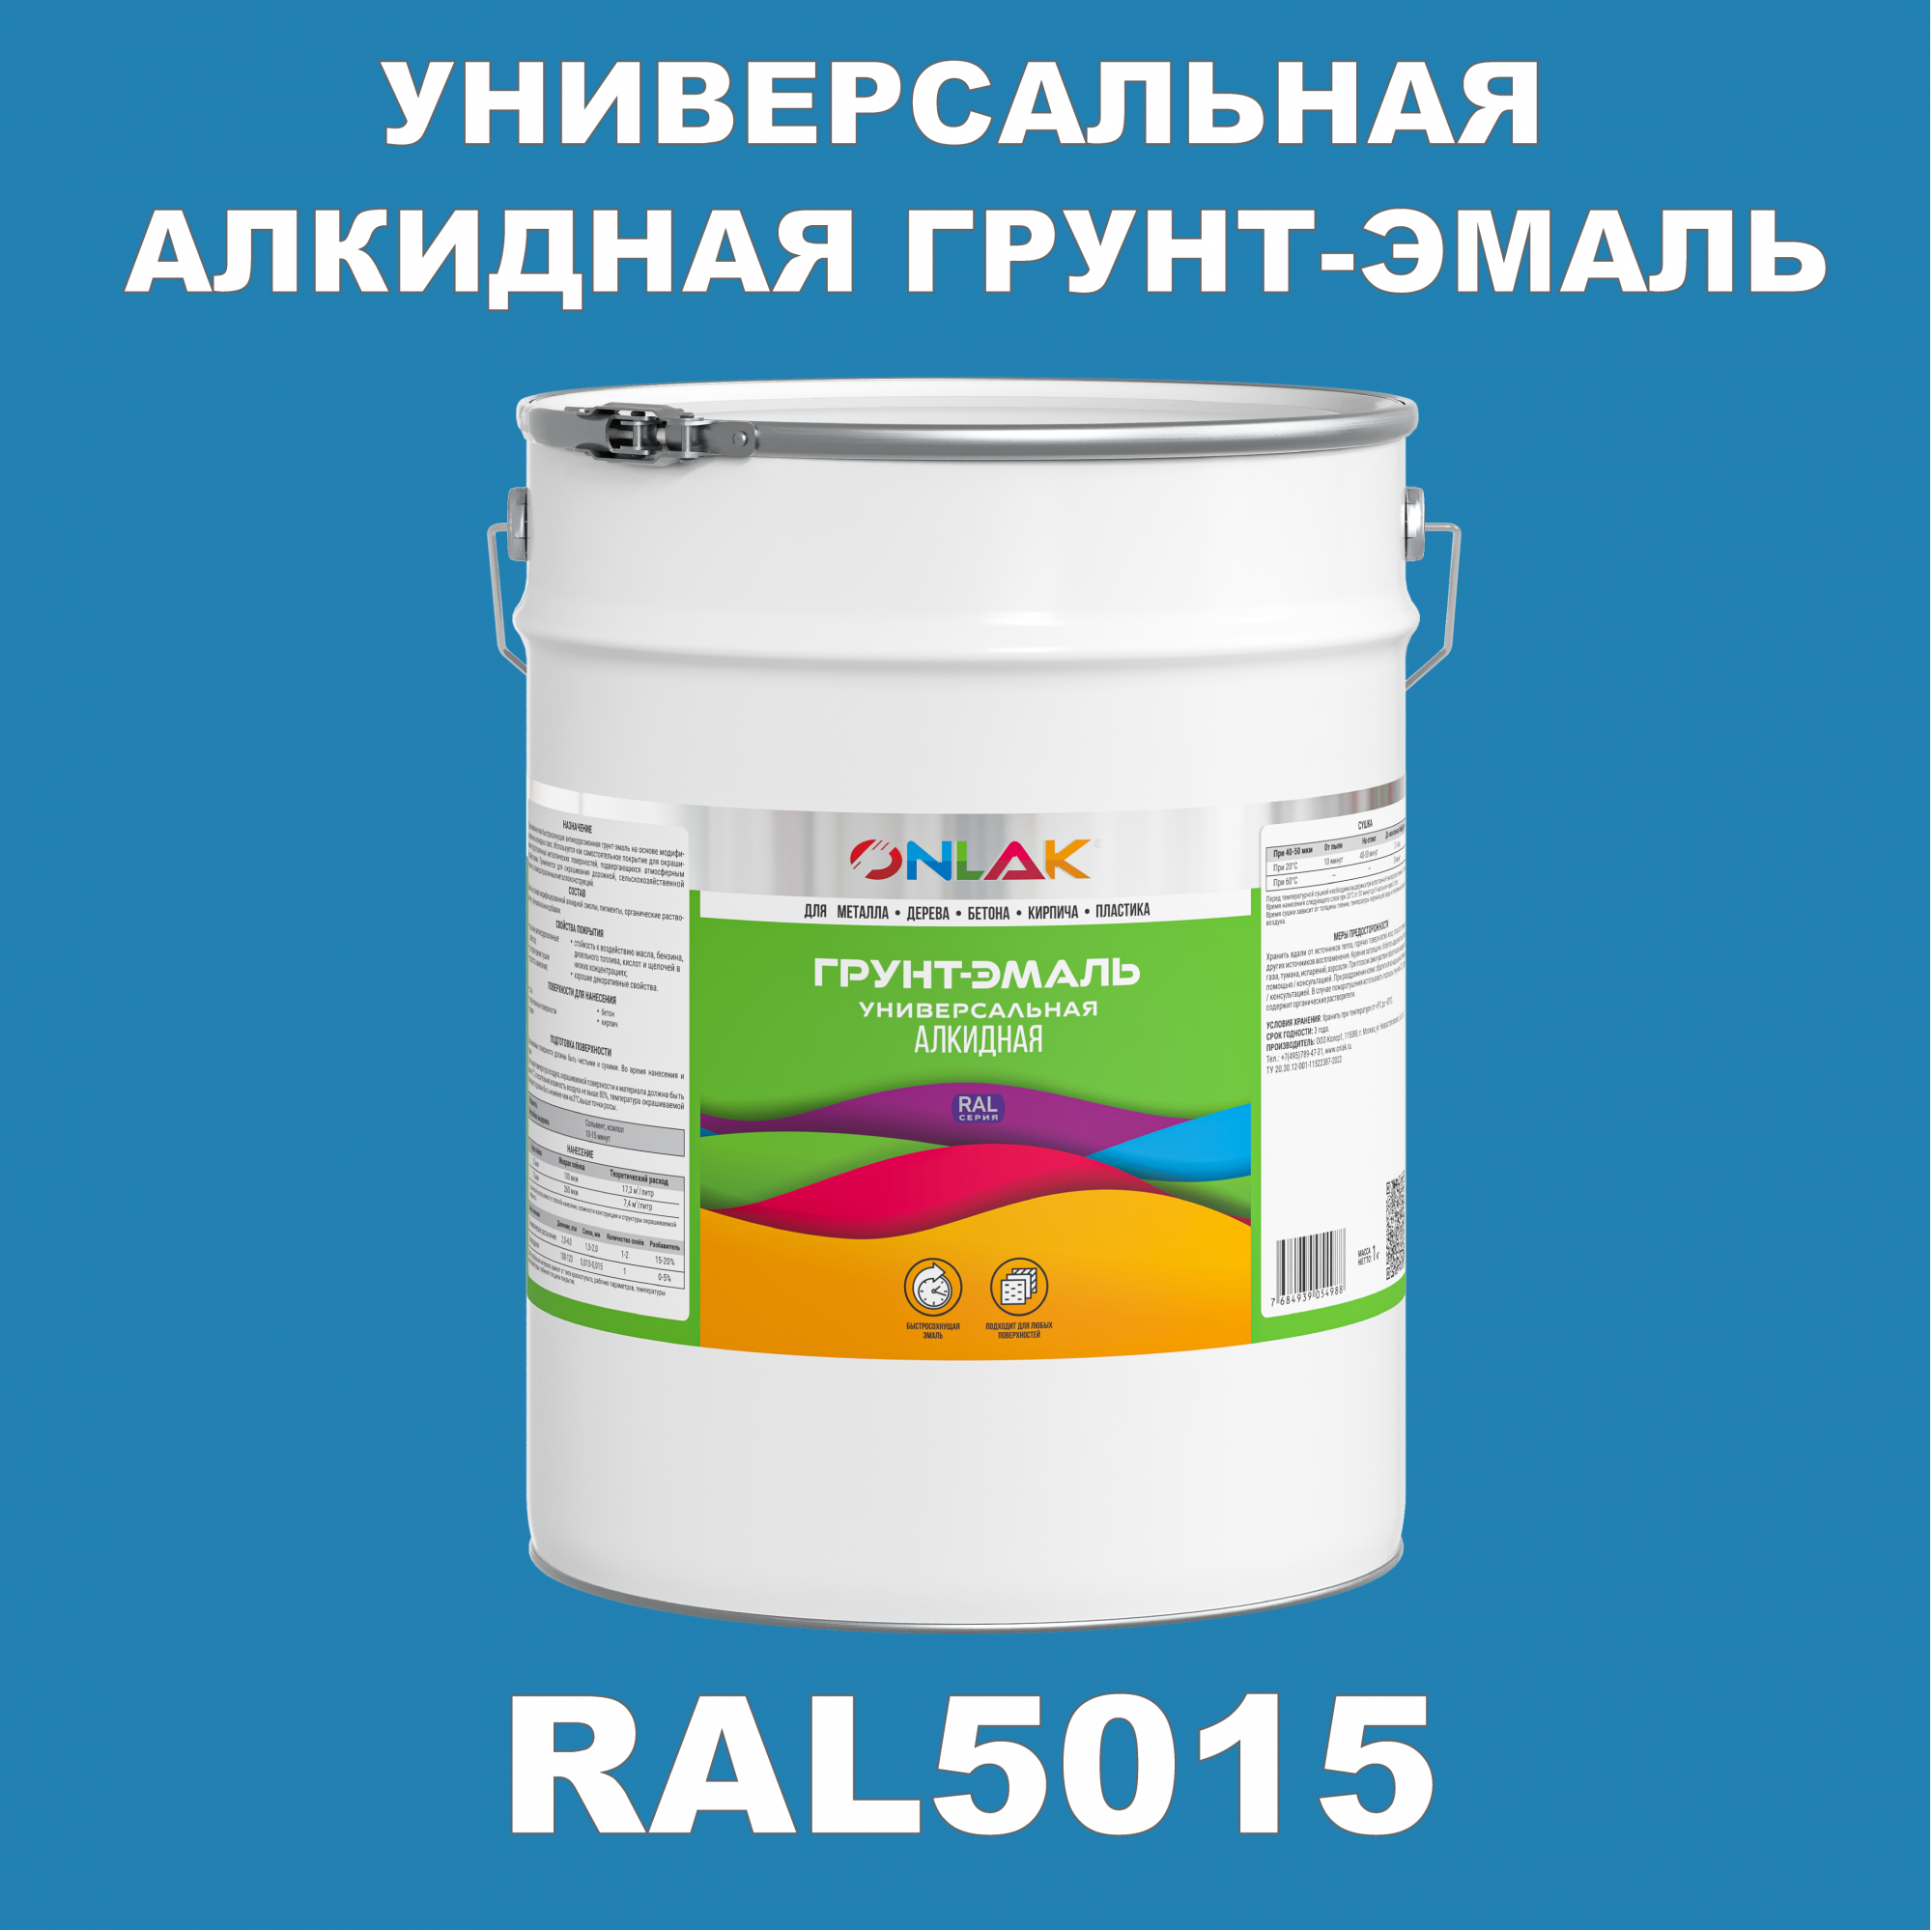 Грунт-эмаль ONLAK 1К RAL5015 антикоррозионная алкидная по металлу по ржавчине 20 кг грунт эмаль skladno по ржавчине алкидная желтая 1 8 кг